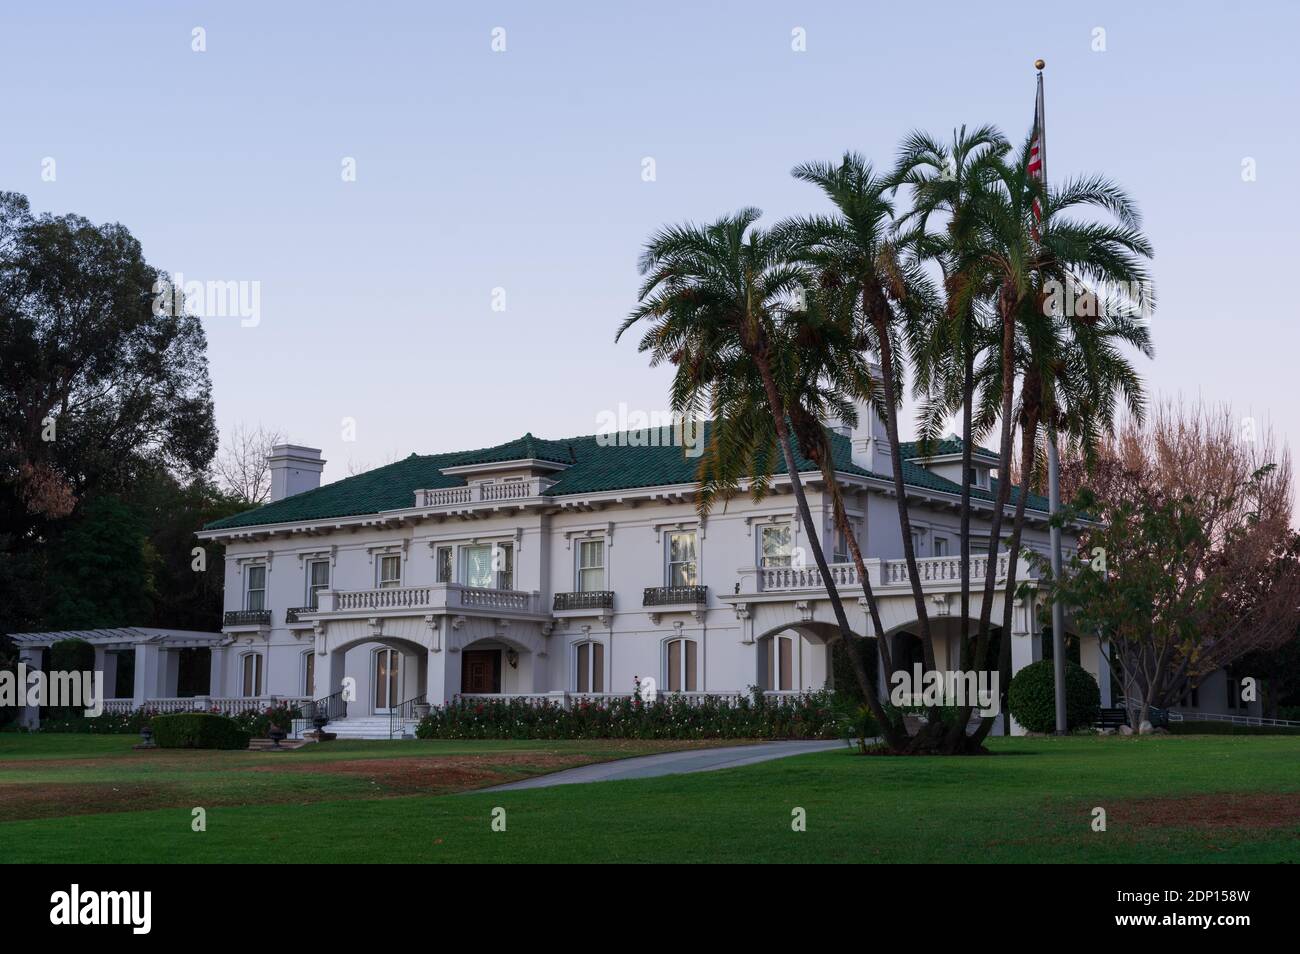 La storica Wrigley Mansion o Tournament House, sede permanente del Torneo delle rose, mostrata a Pasadena. Foto Stock